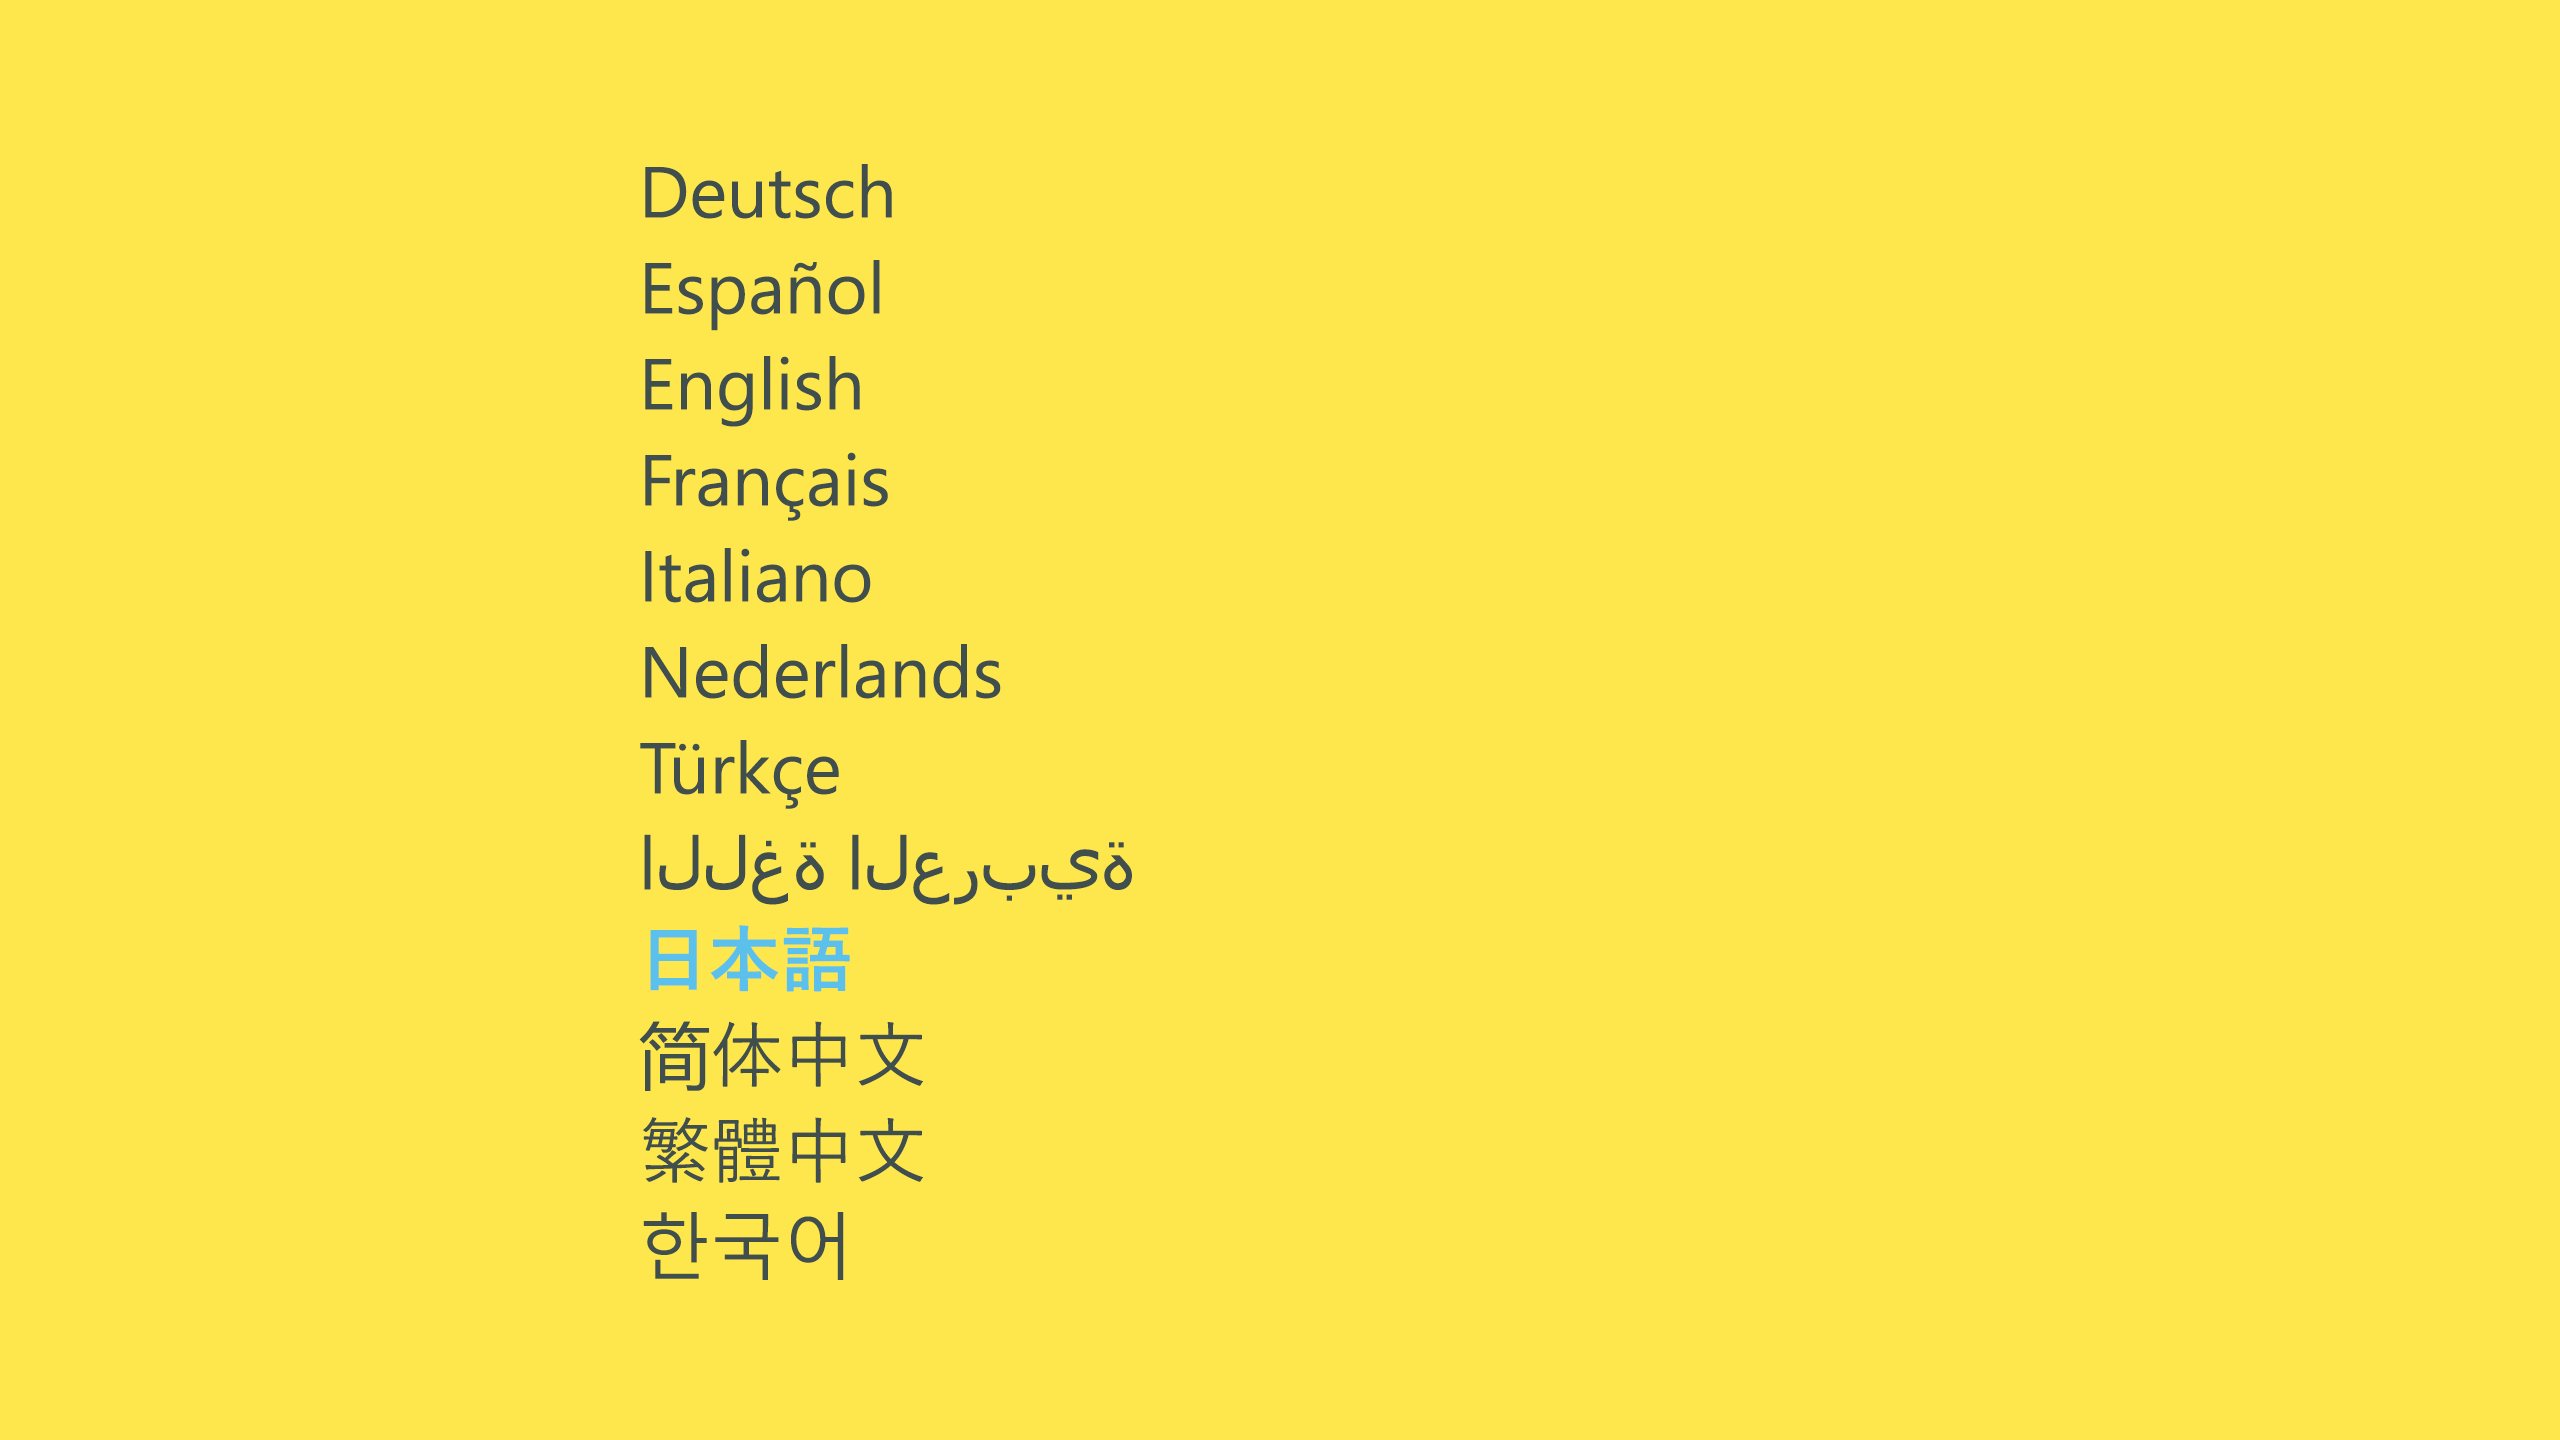 それぞれの言語でそれぞれの言語名を表示する例。